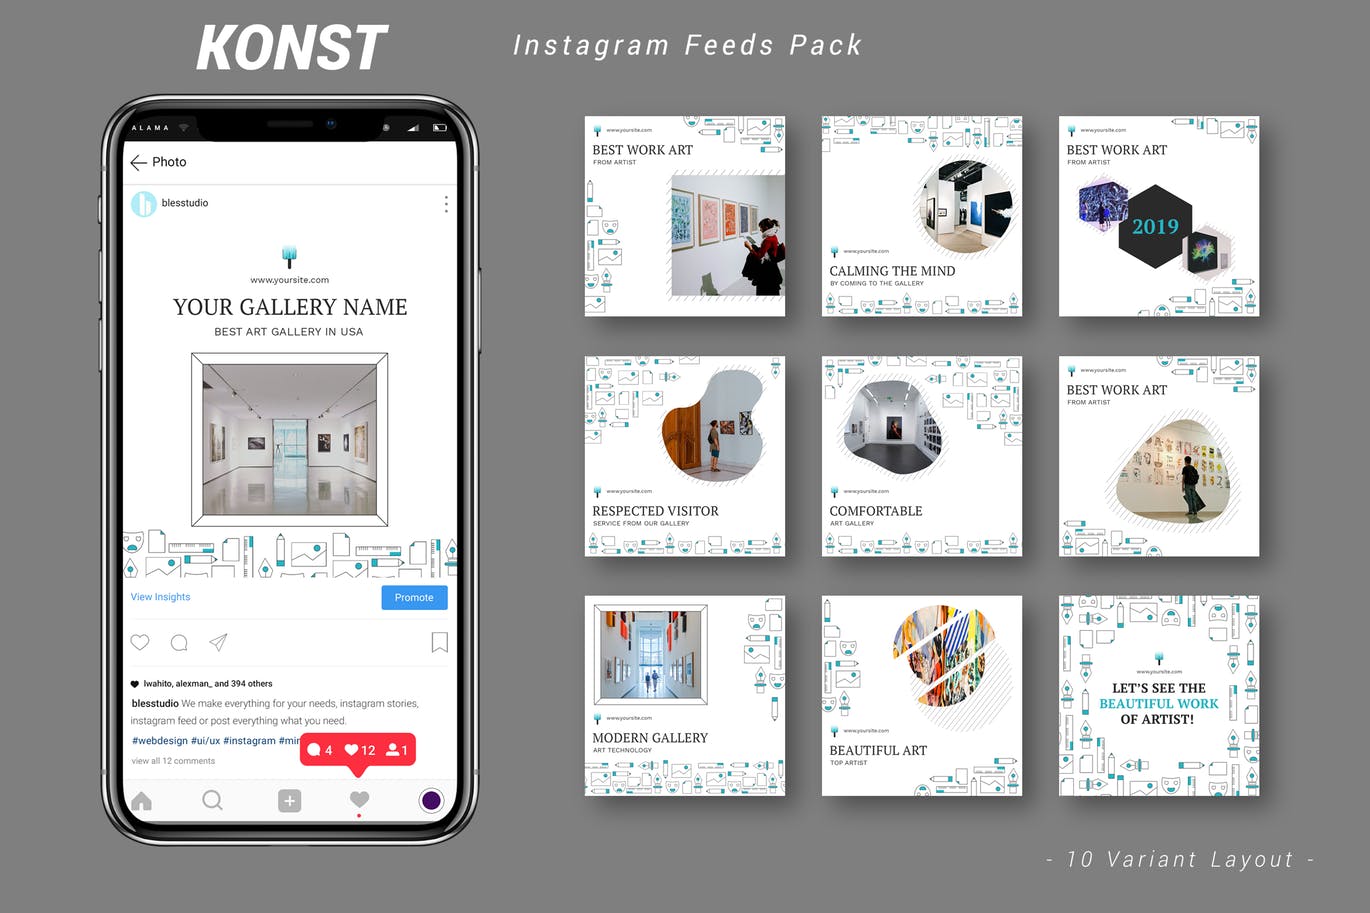 创意艺术展览主题Instagram信息流广告设计模板16设计网精选 Konst – Instagram Feeds Pack插图